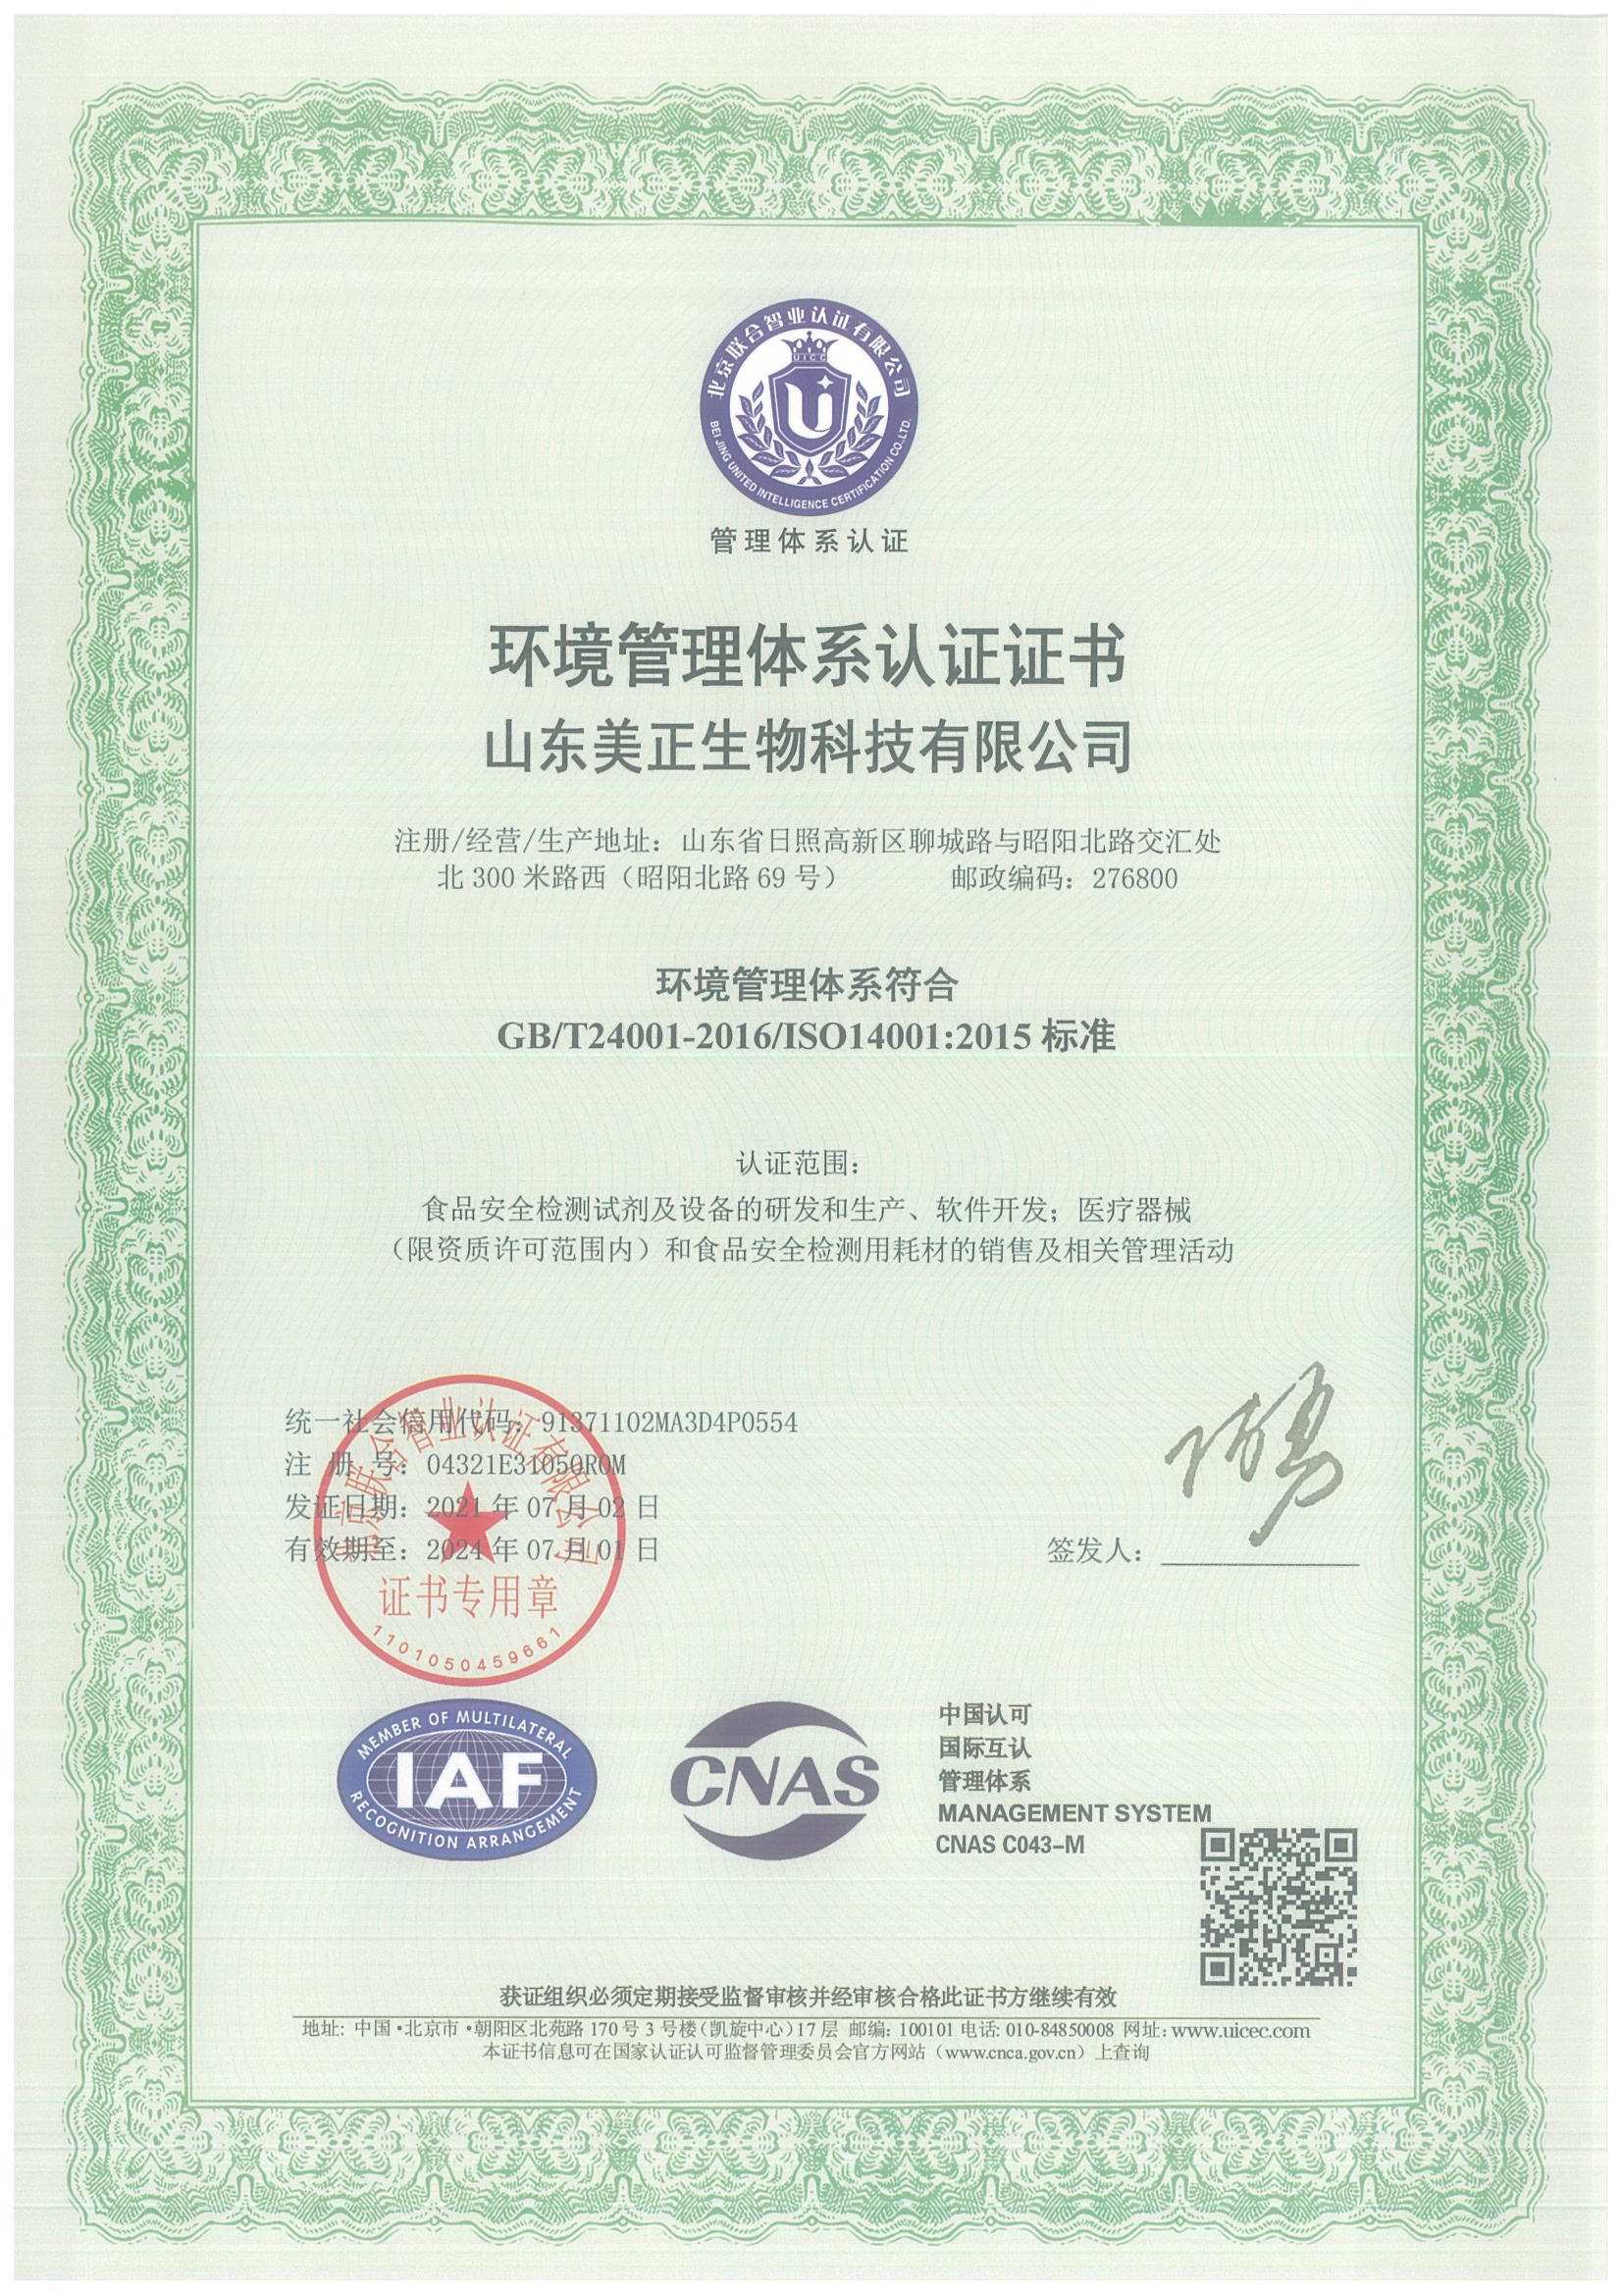 山东美正-环境管理体系认证证书【中文版】